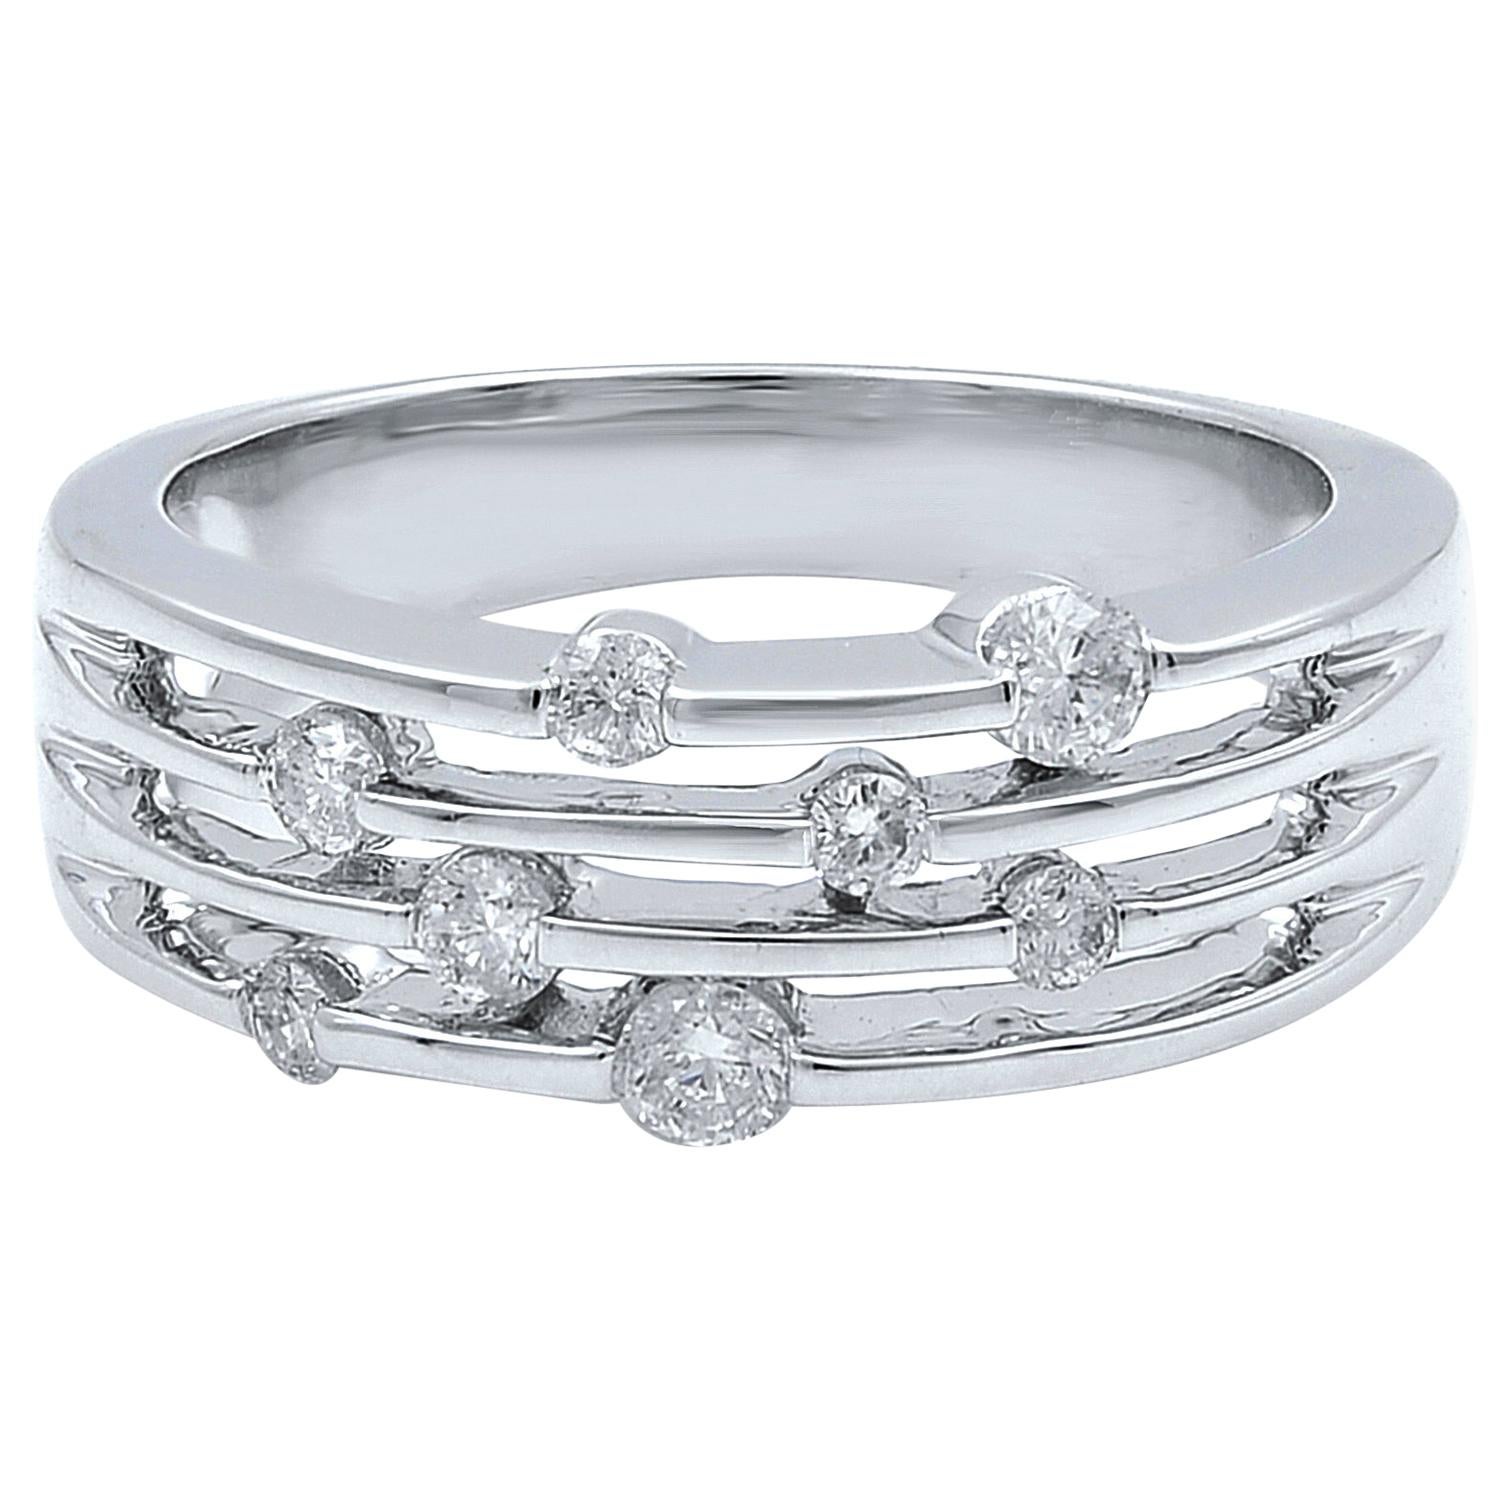 Rachel Koen Diamond Band Ring 14K White Gold 0.35cts For Sale